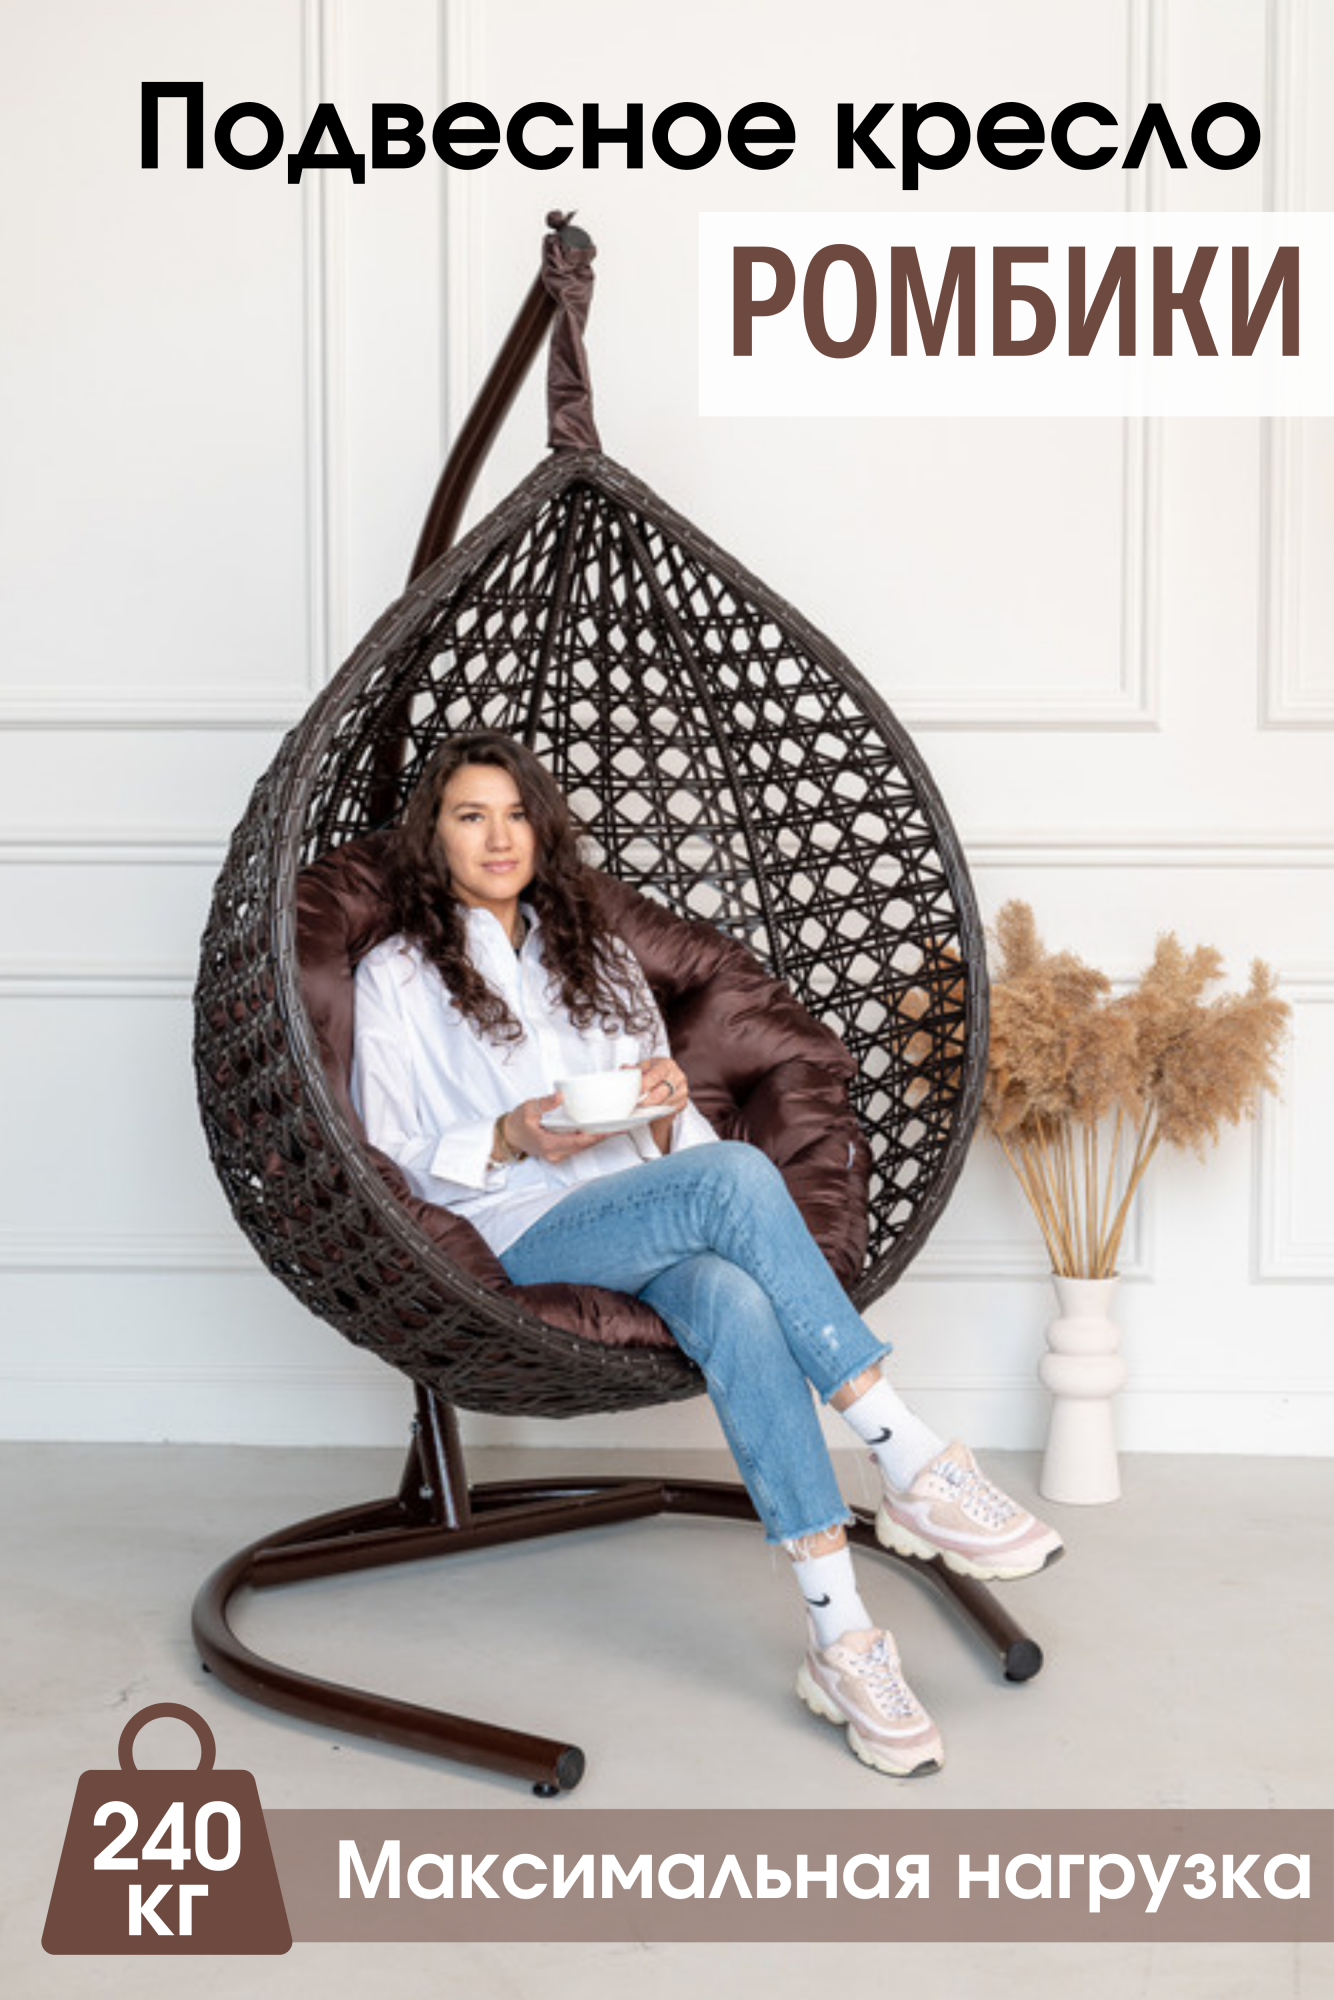 Садовое подвесное кресло Венге STULER Ромбики Ажур 240 Круг – купить в Москве, цены в интернет-магазинах на Мегамаркет